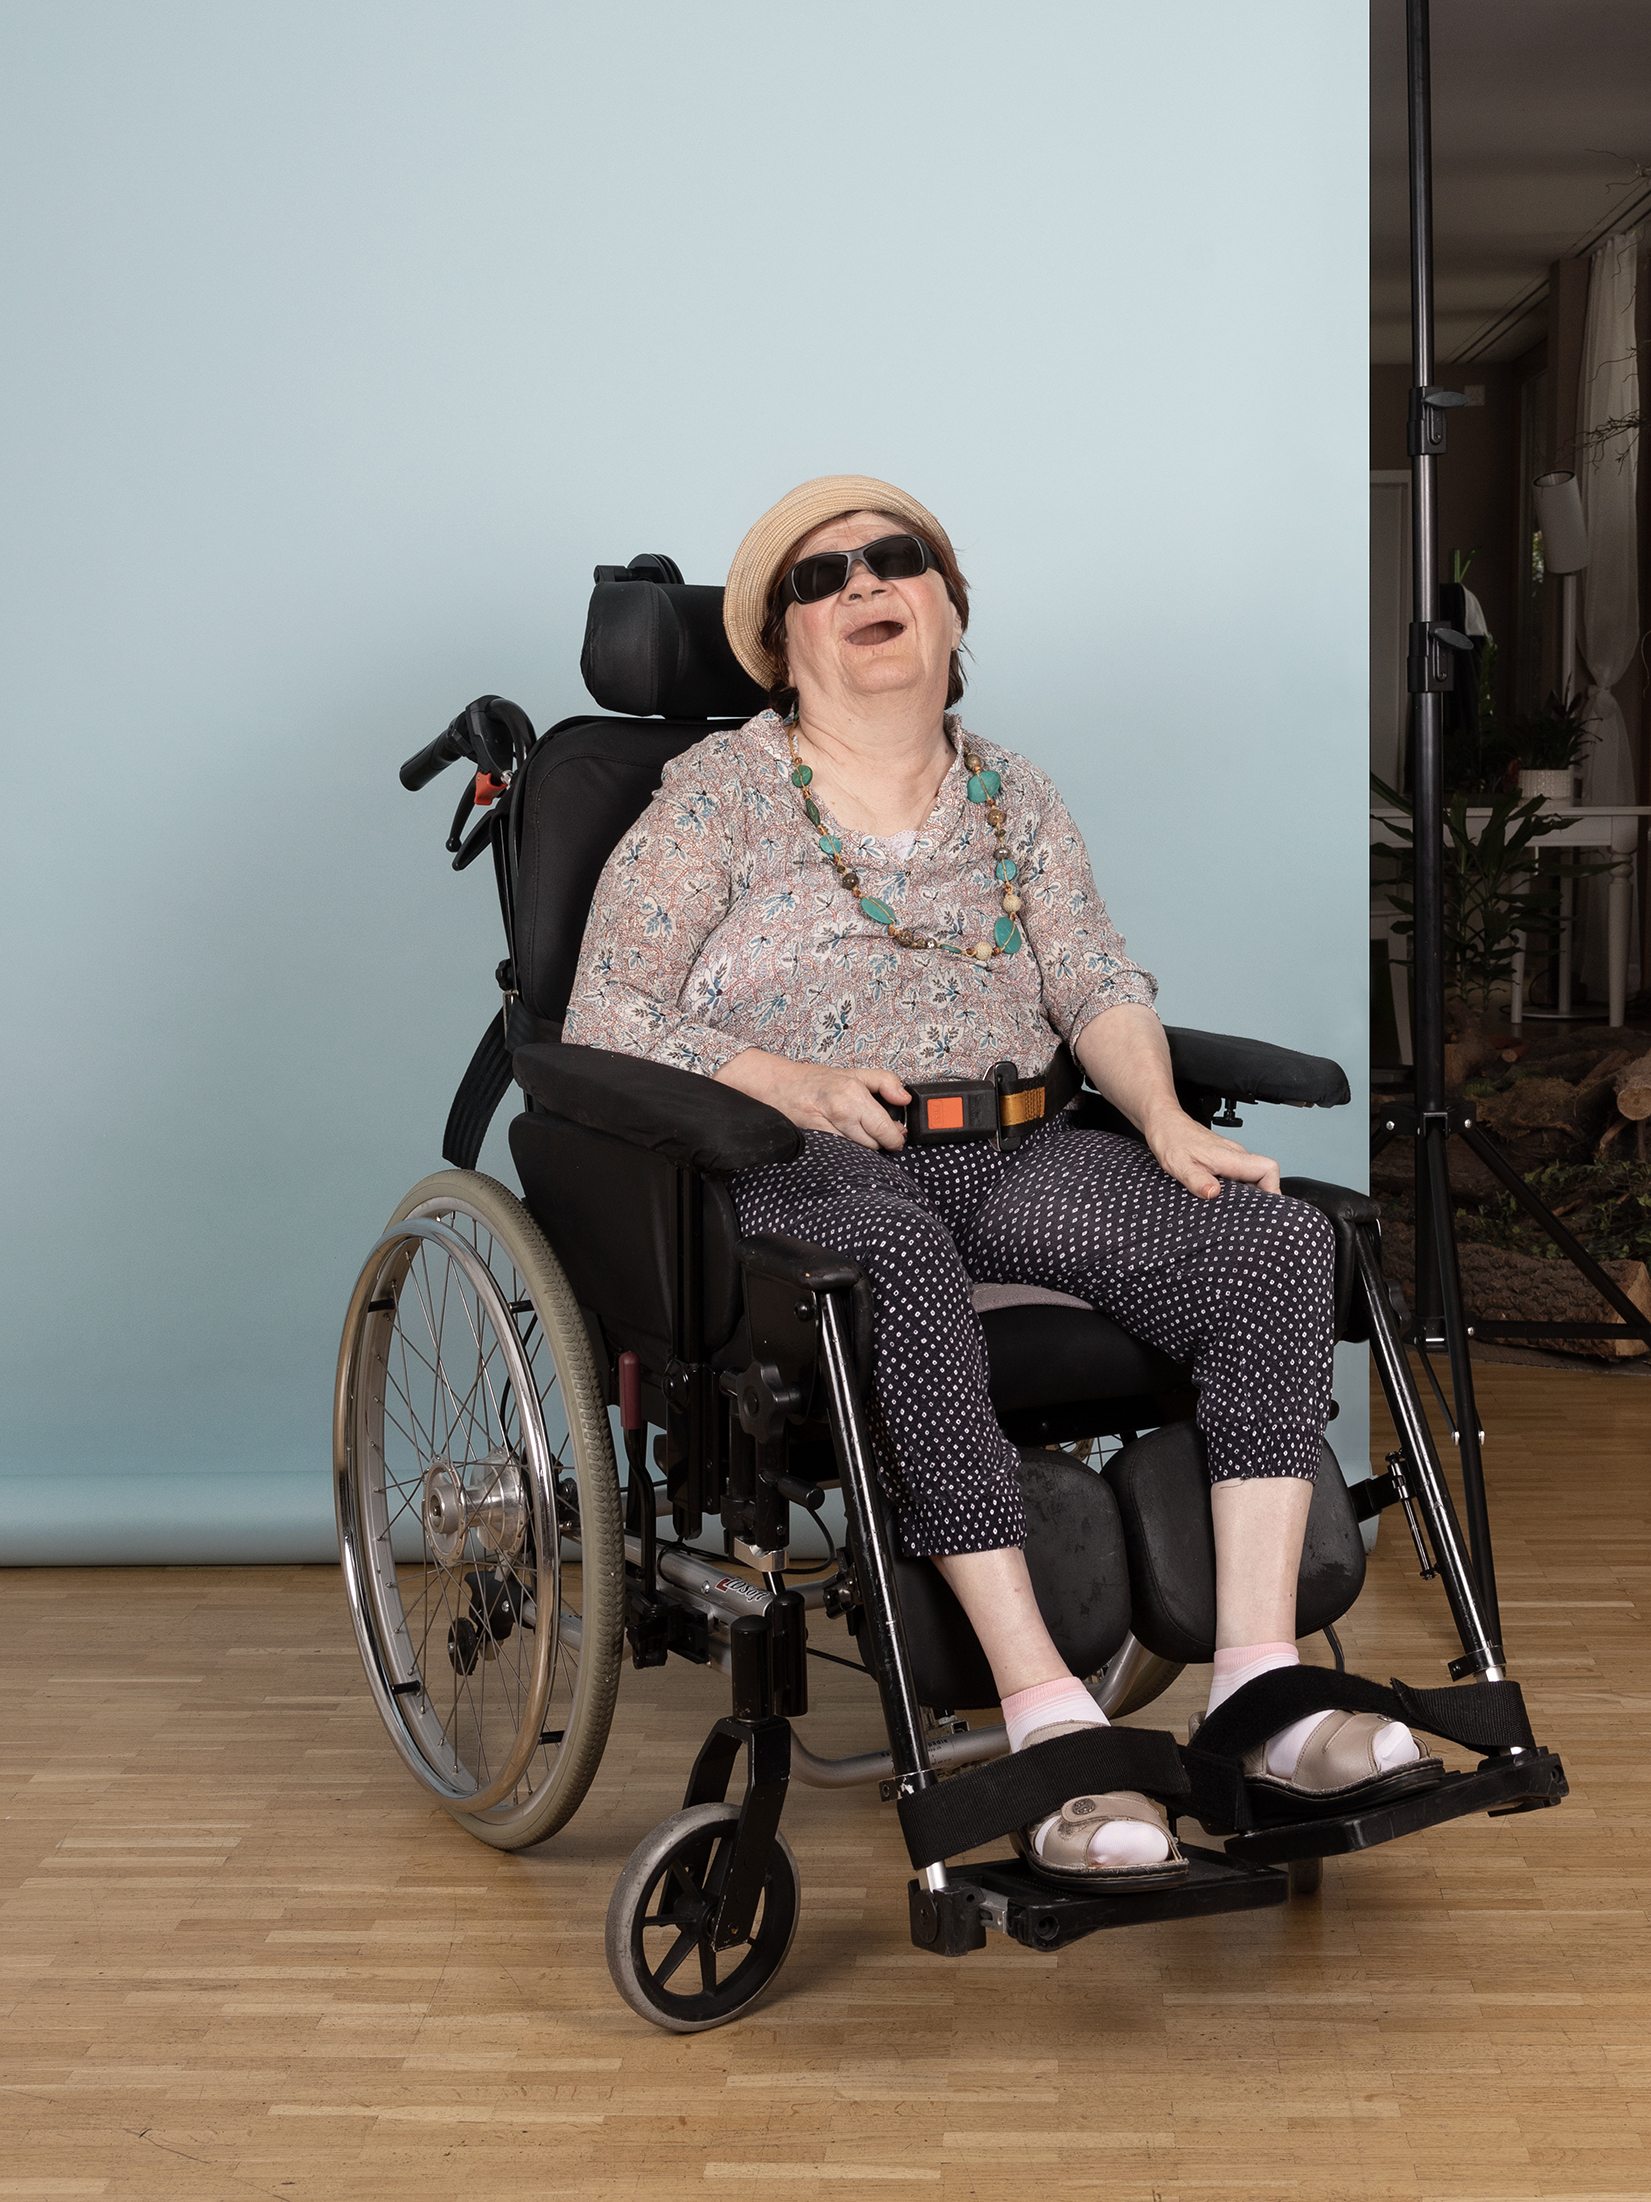 Ein Foto aus dem Buch "Ohne Milch und Zucker". Heidi sitzt in einem Rollstuhl vor einer hellblauen Leinwand.